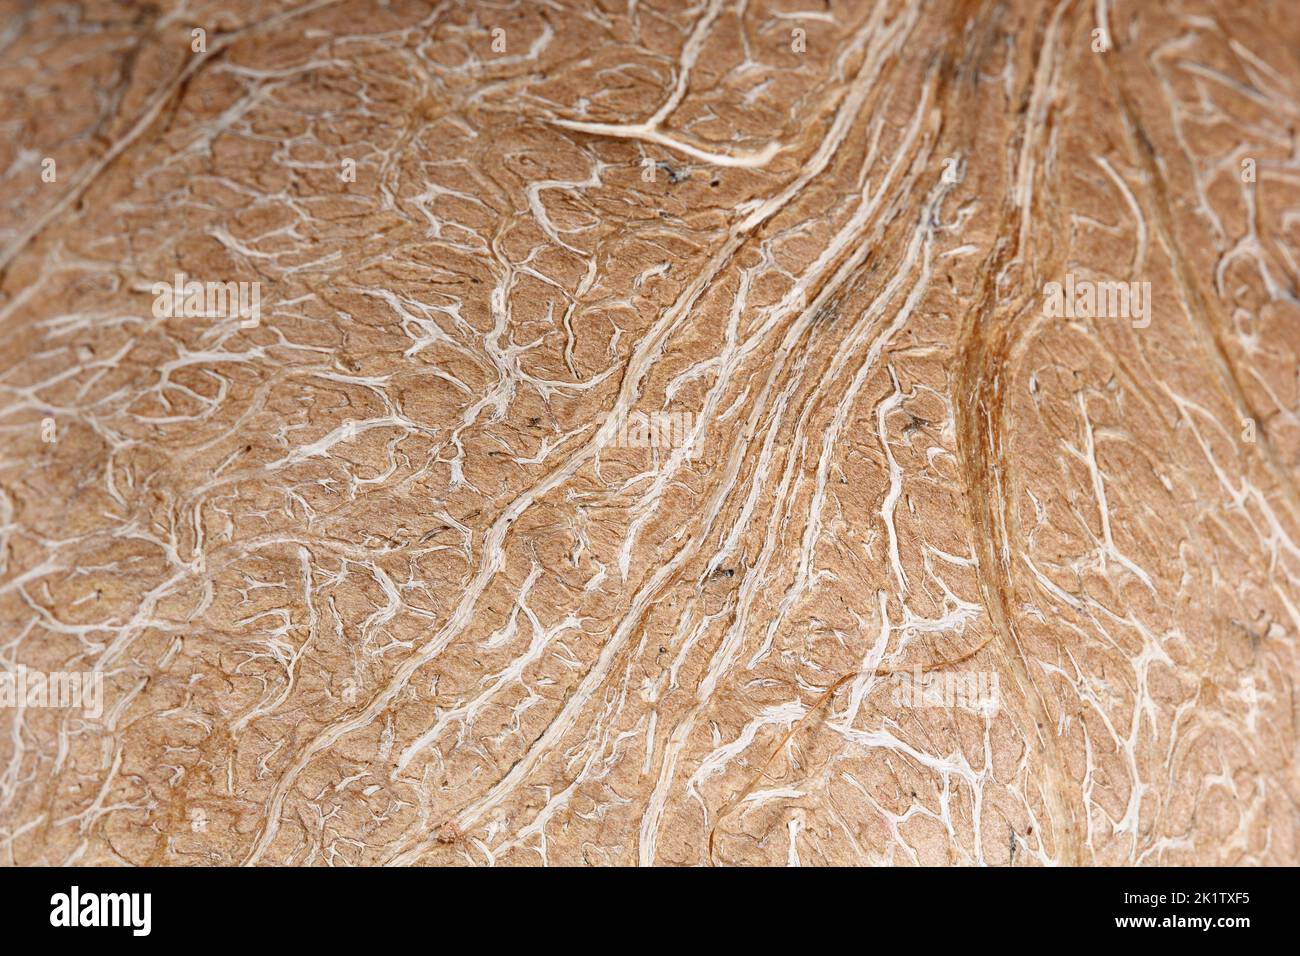 Die Textur der inneren Kokosnuss Schale mit weißen Fasern und brauner Basis Stockfoto